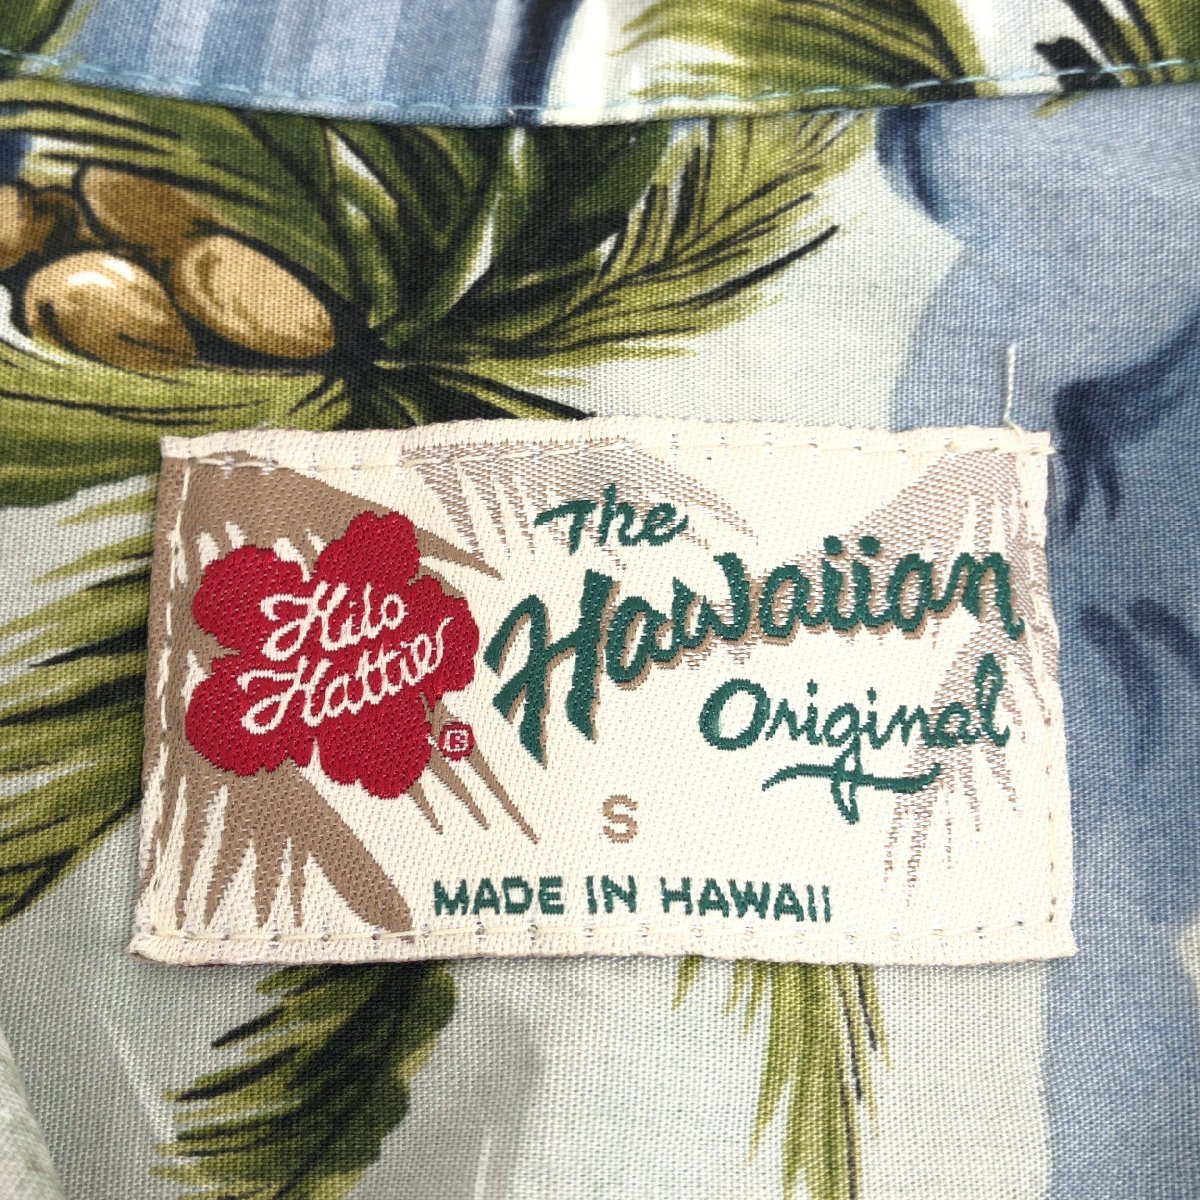 ハワイ製 Hilo Hattie ヒロハッティ ヤシの木柄 アロハシャツ S(JP:M相当) 総柄 半袖 USA製 アメリカ製 古着 メンズ 紳士 _画像3